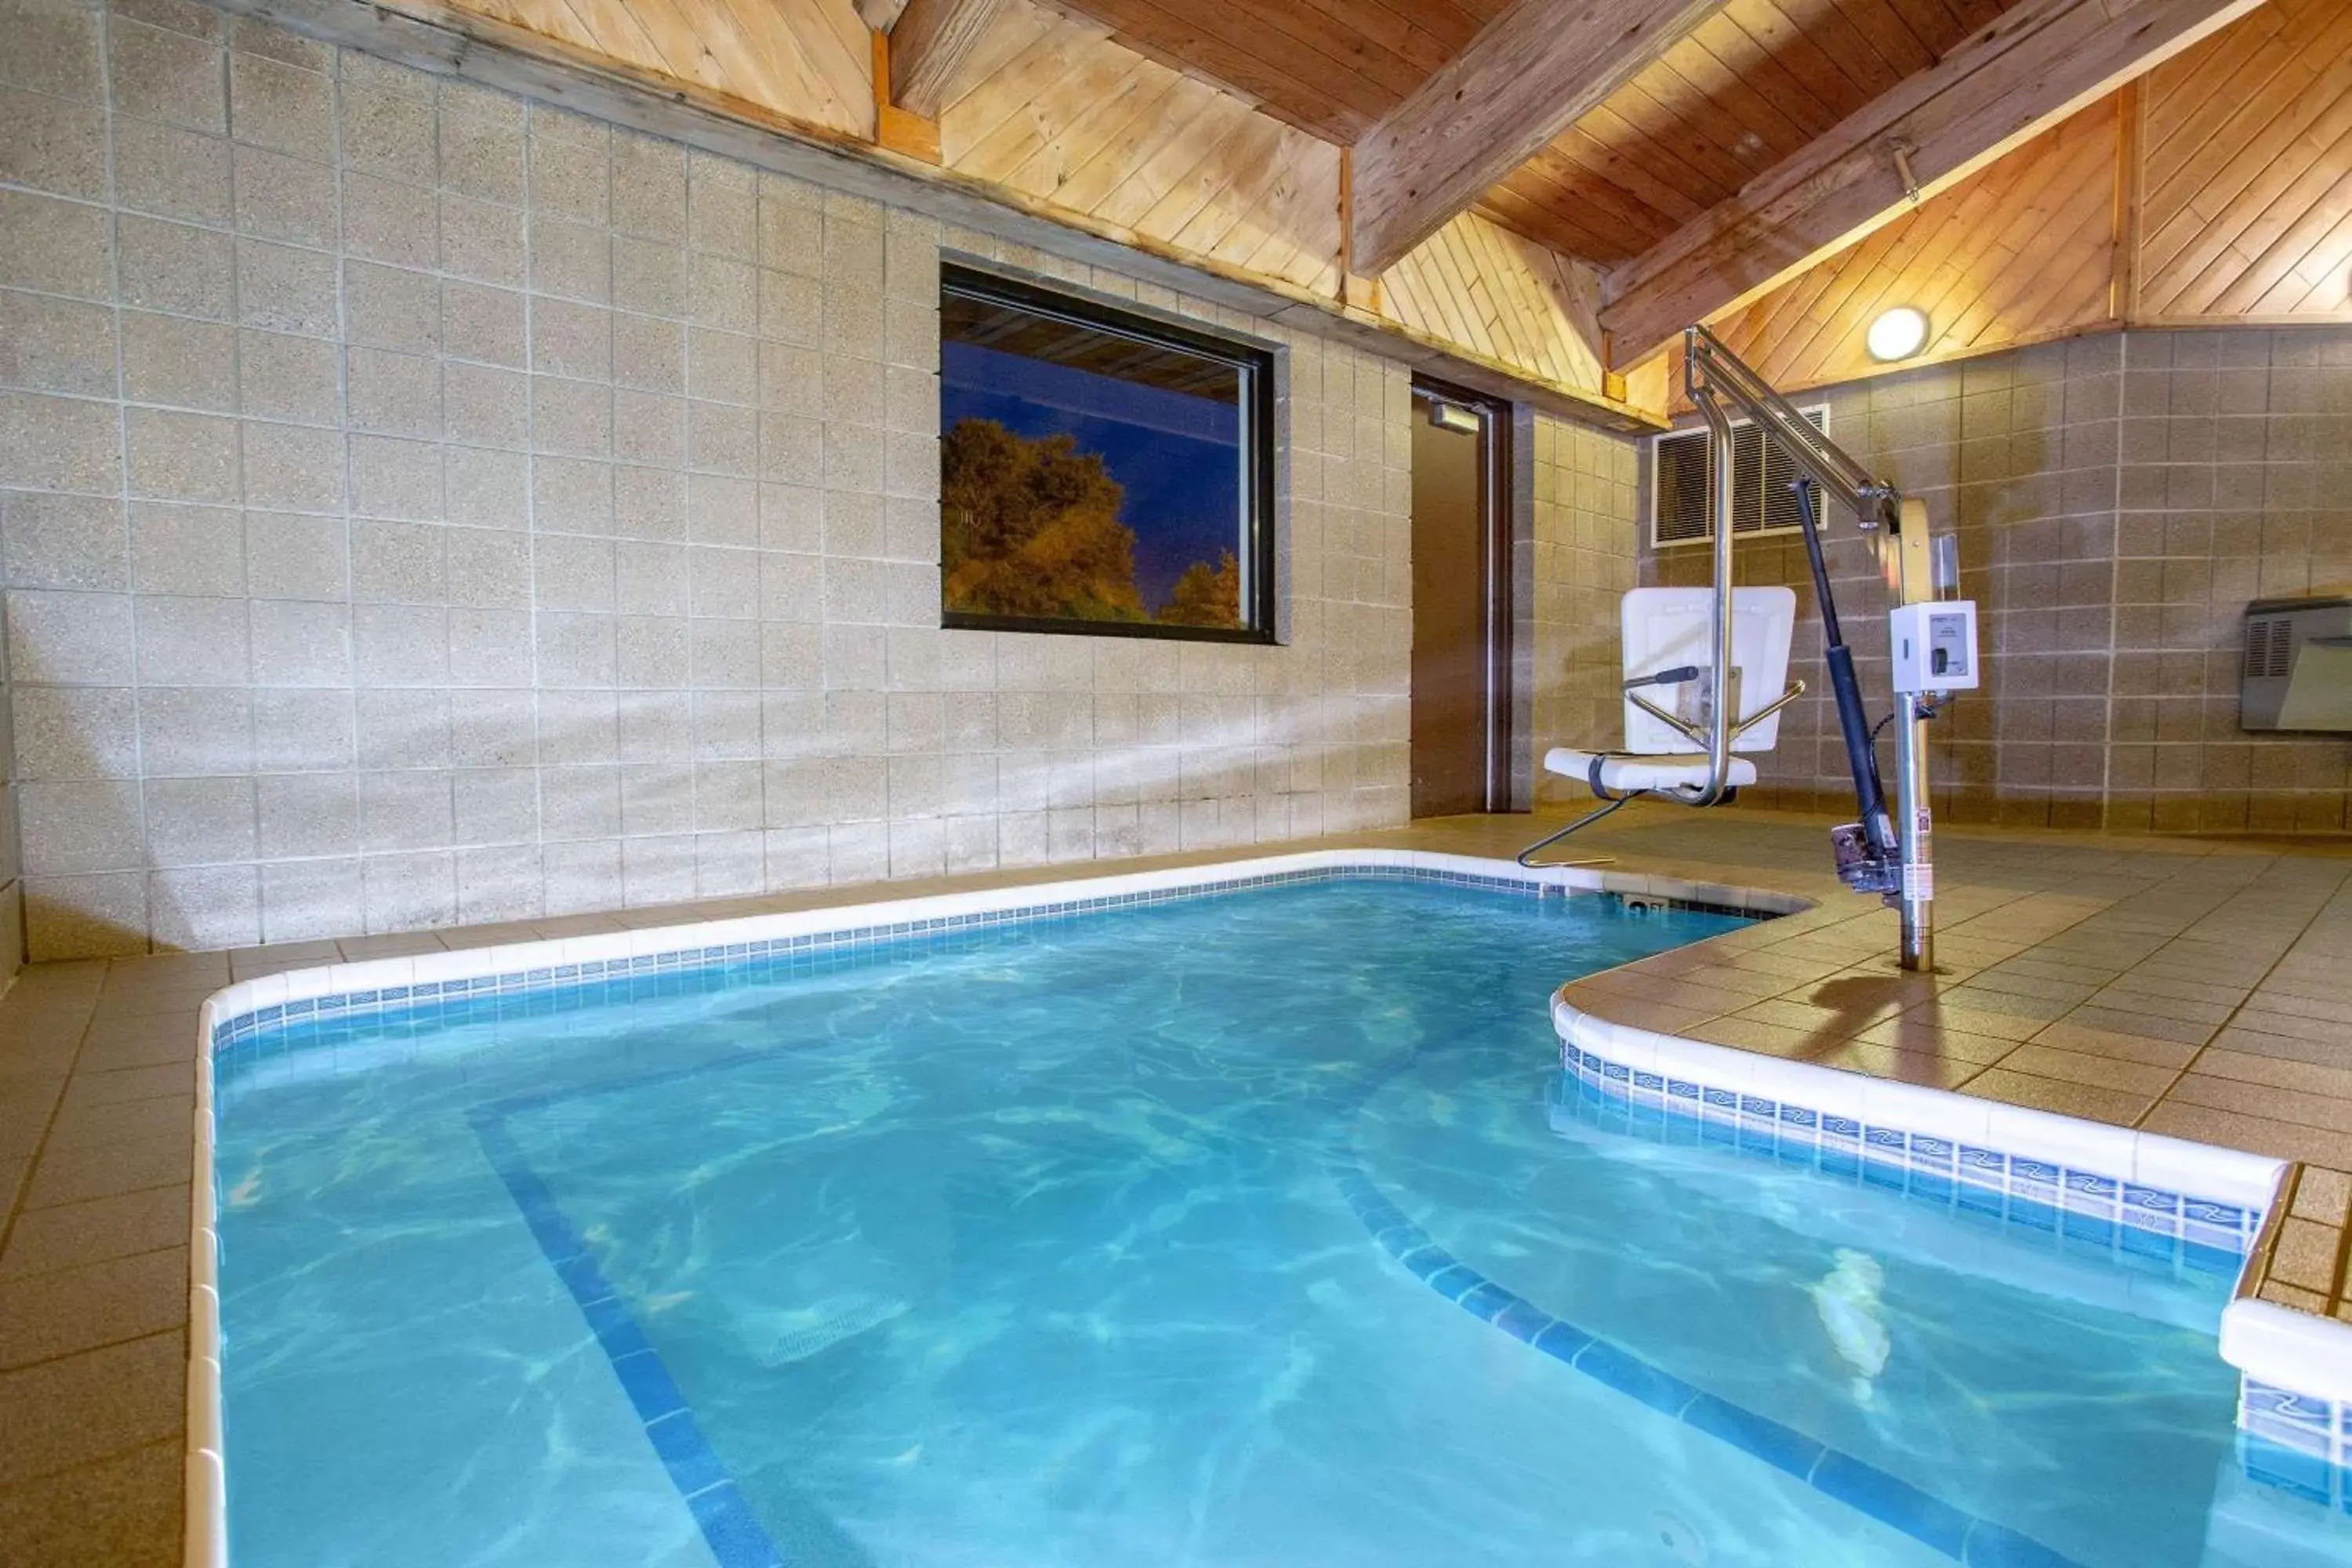 Hot Tub, Swimming Pool in AmericInn by Wyndham Green Bay West